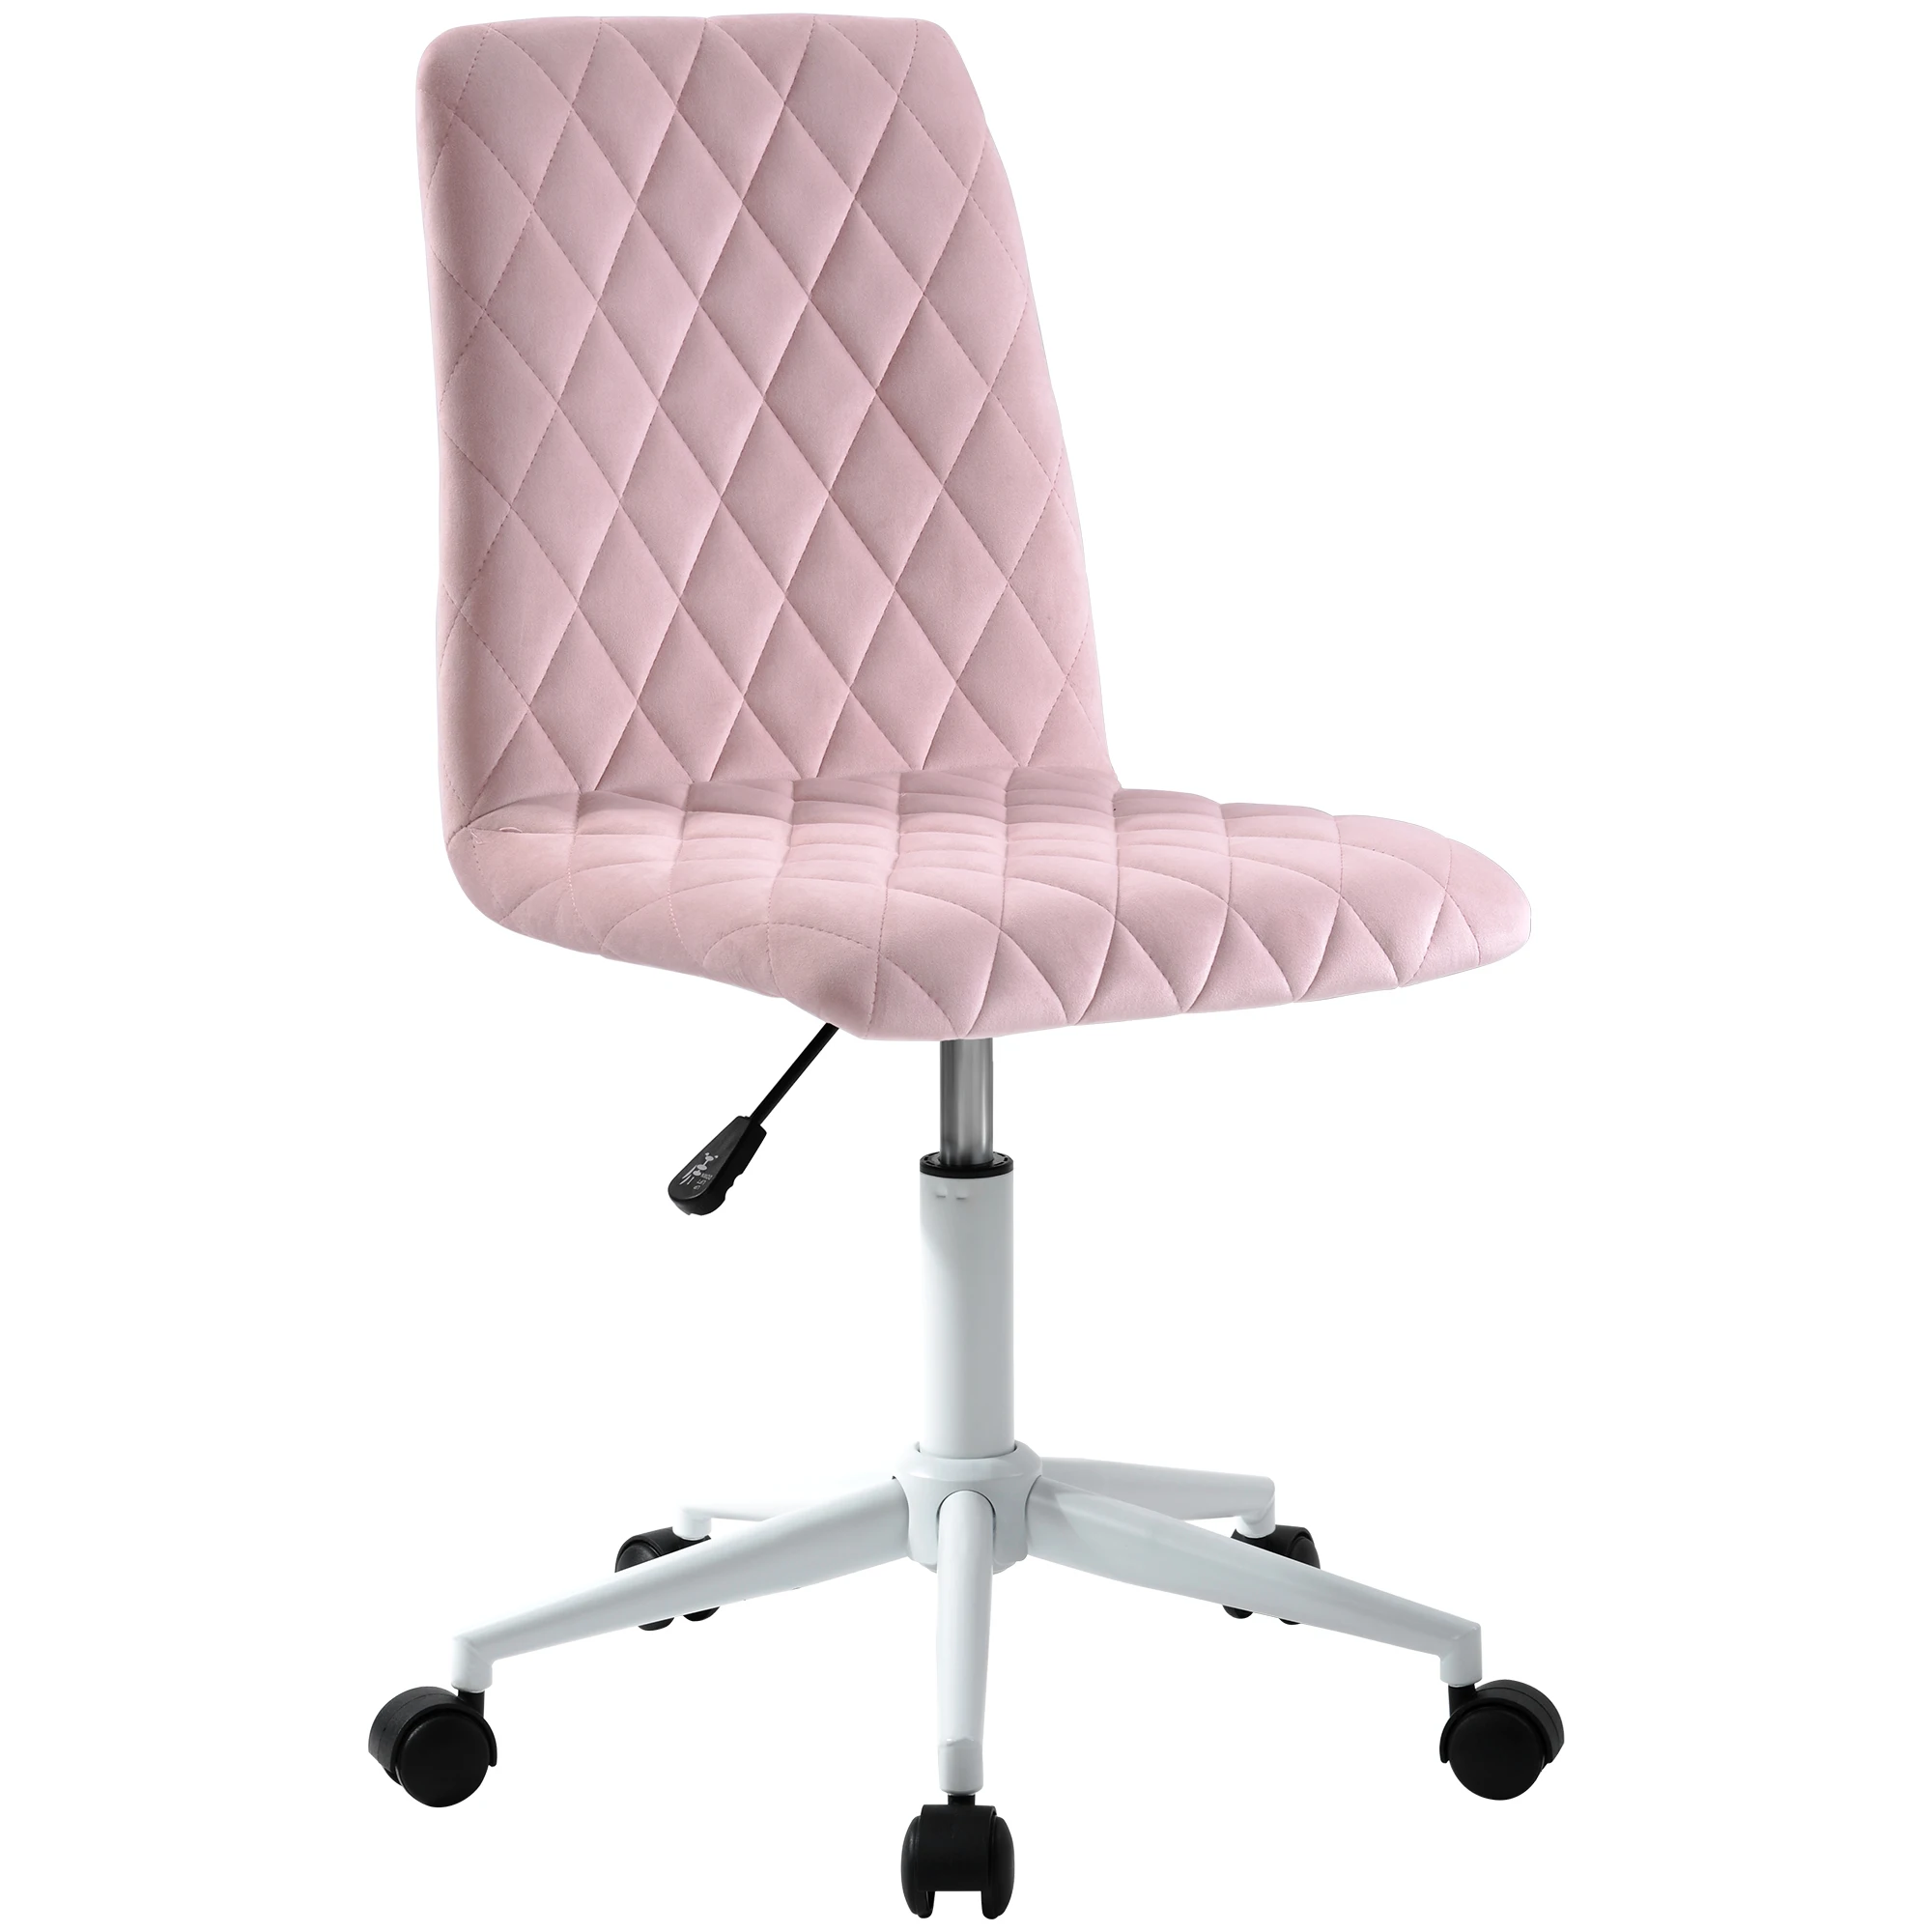 Офисное кресло с высокой спинкой регулируемое эргономичное бархатное для